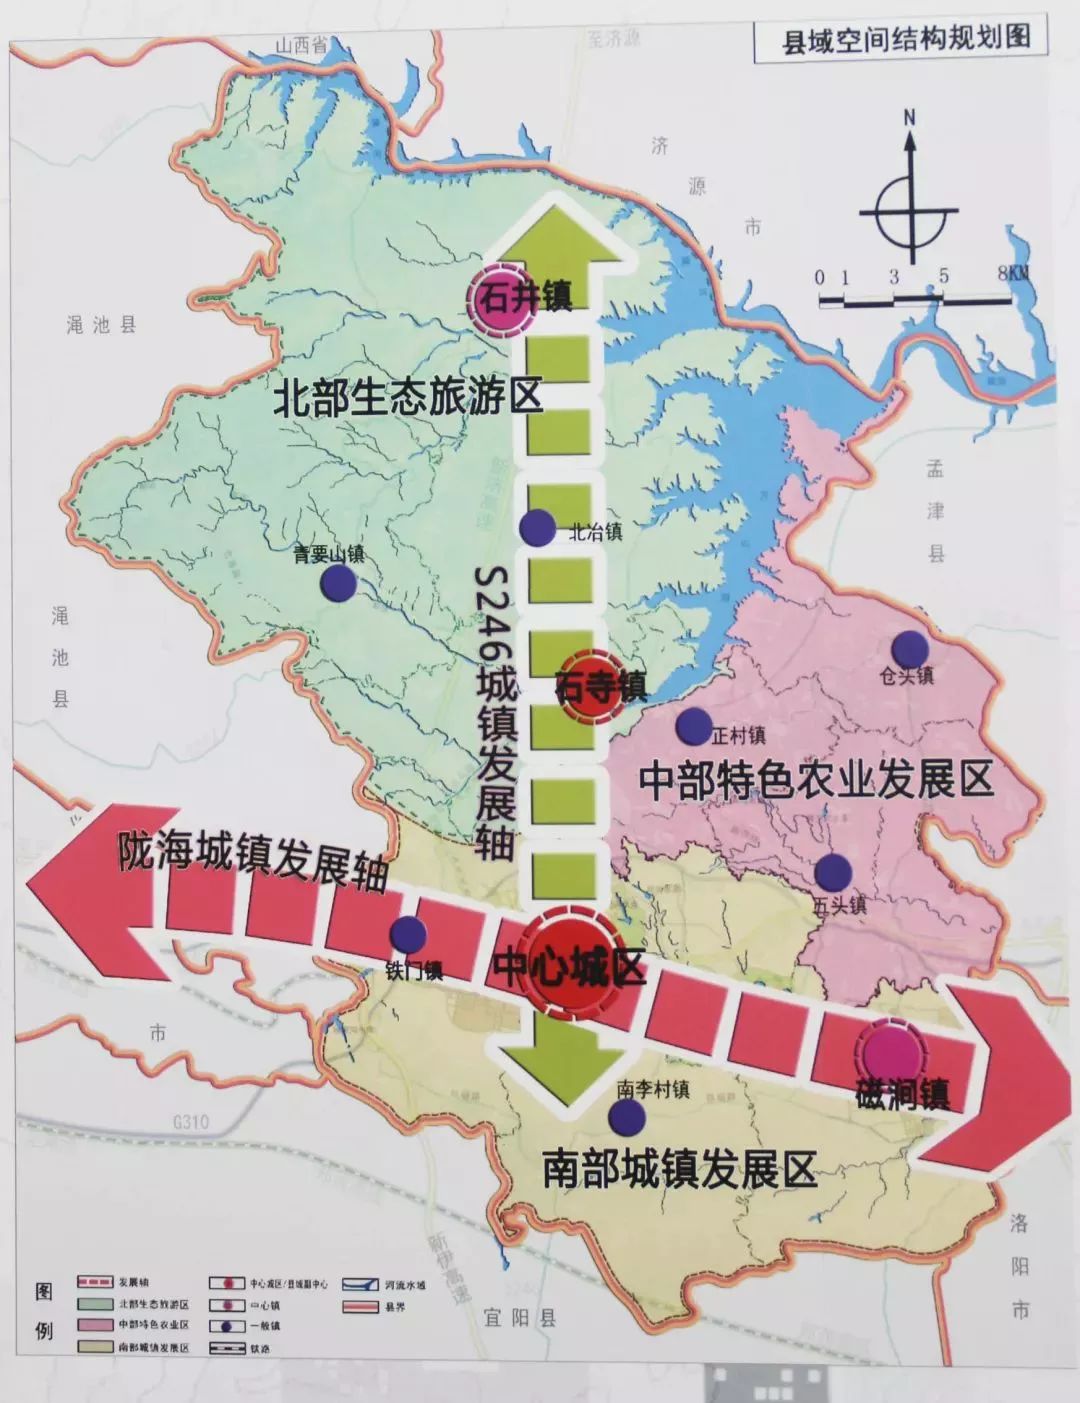 新安县 县域空间规划图规划期限:2017年-2035年74城市定位